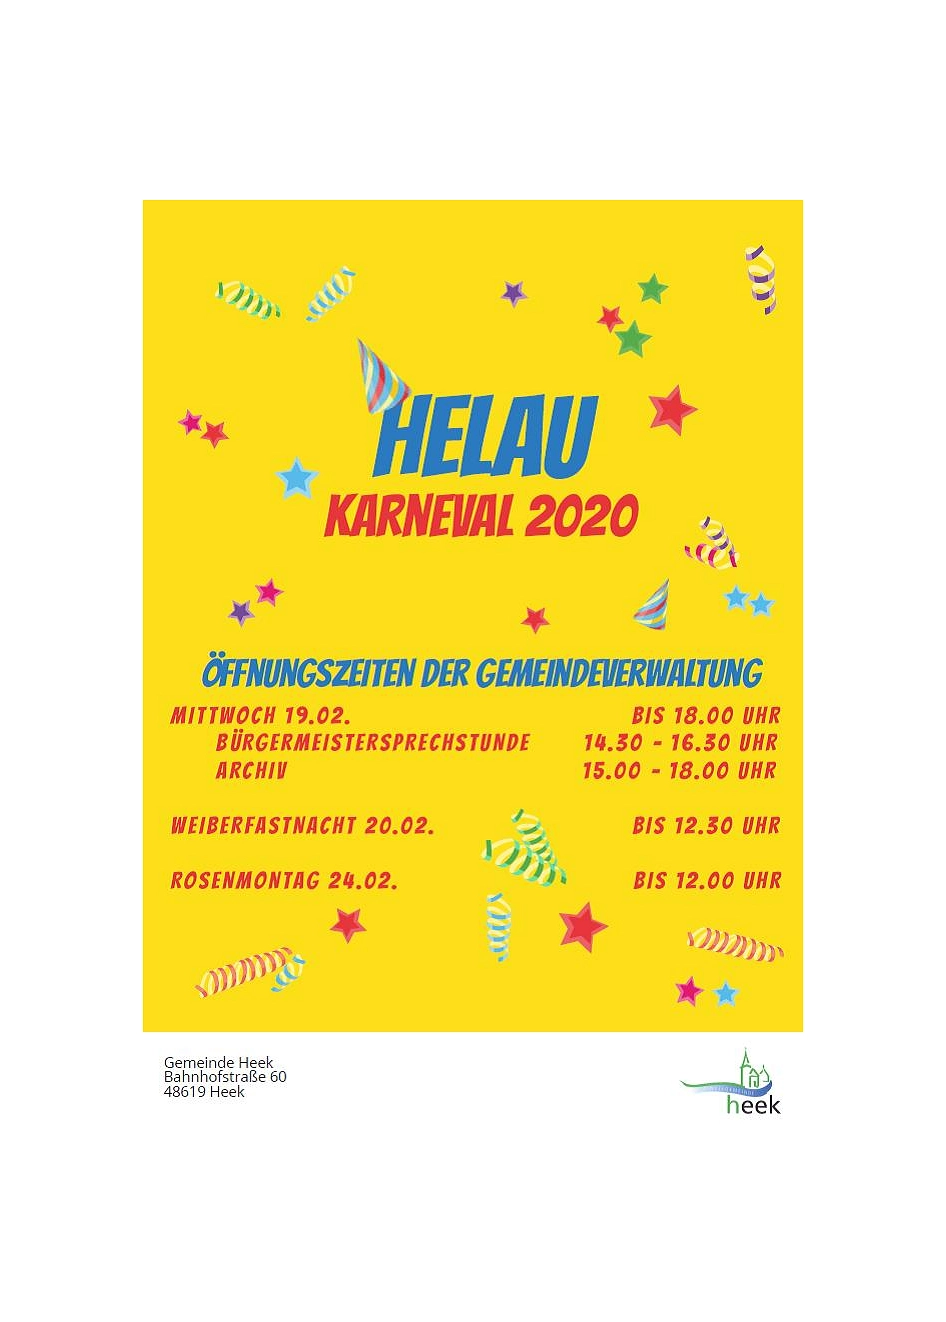 Öffnungszeiten Karneval 2020 neu © Gemeinde Heek